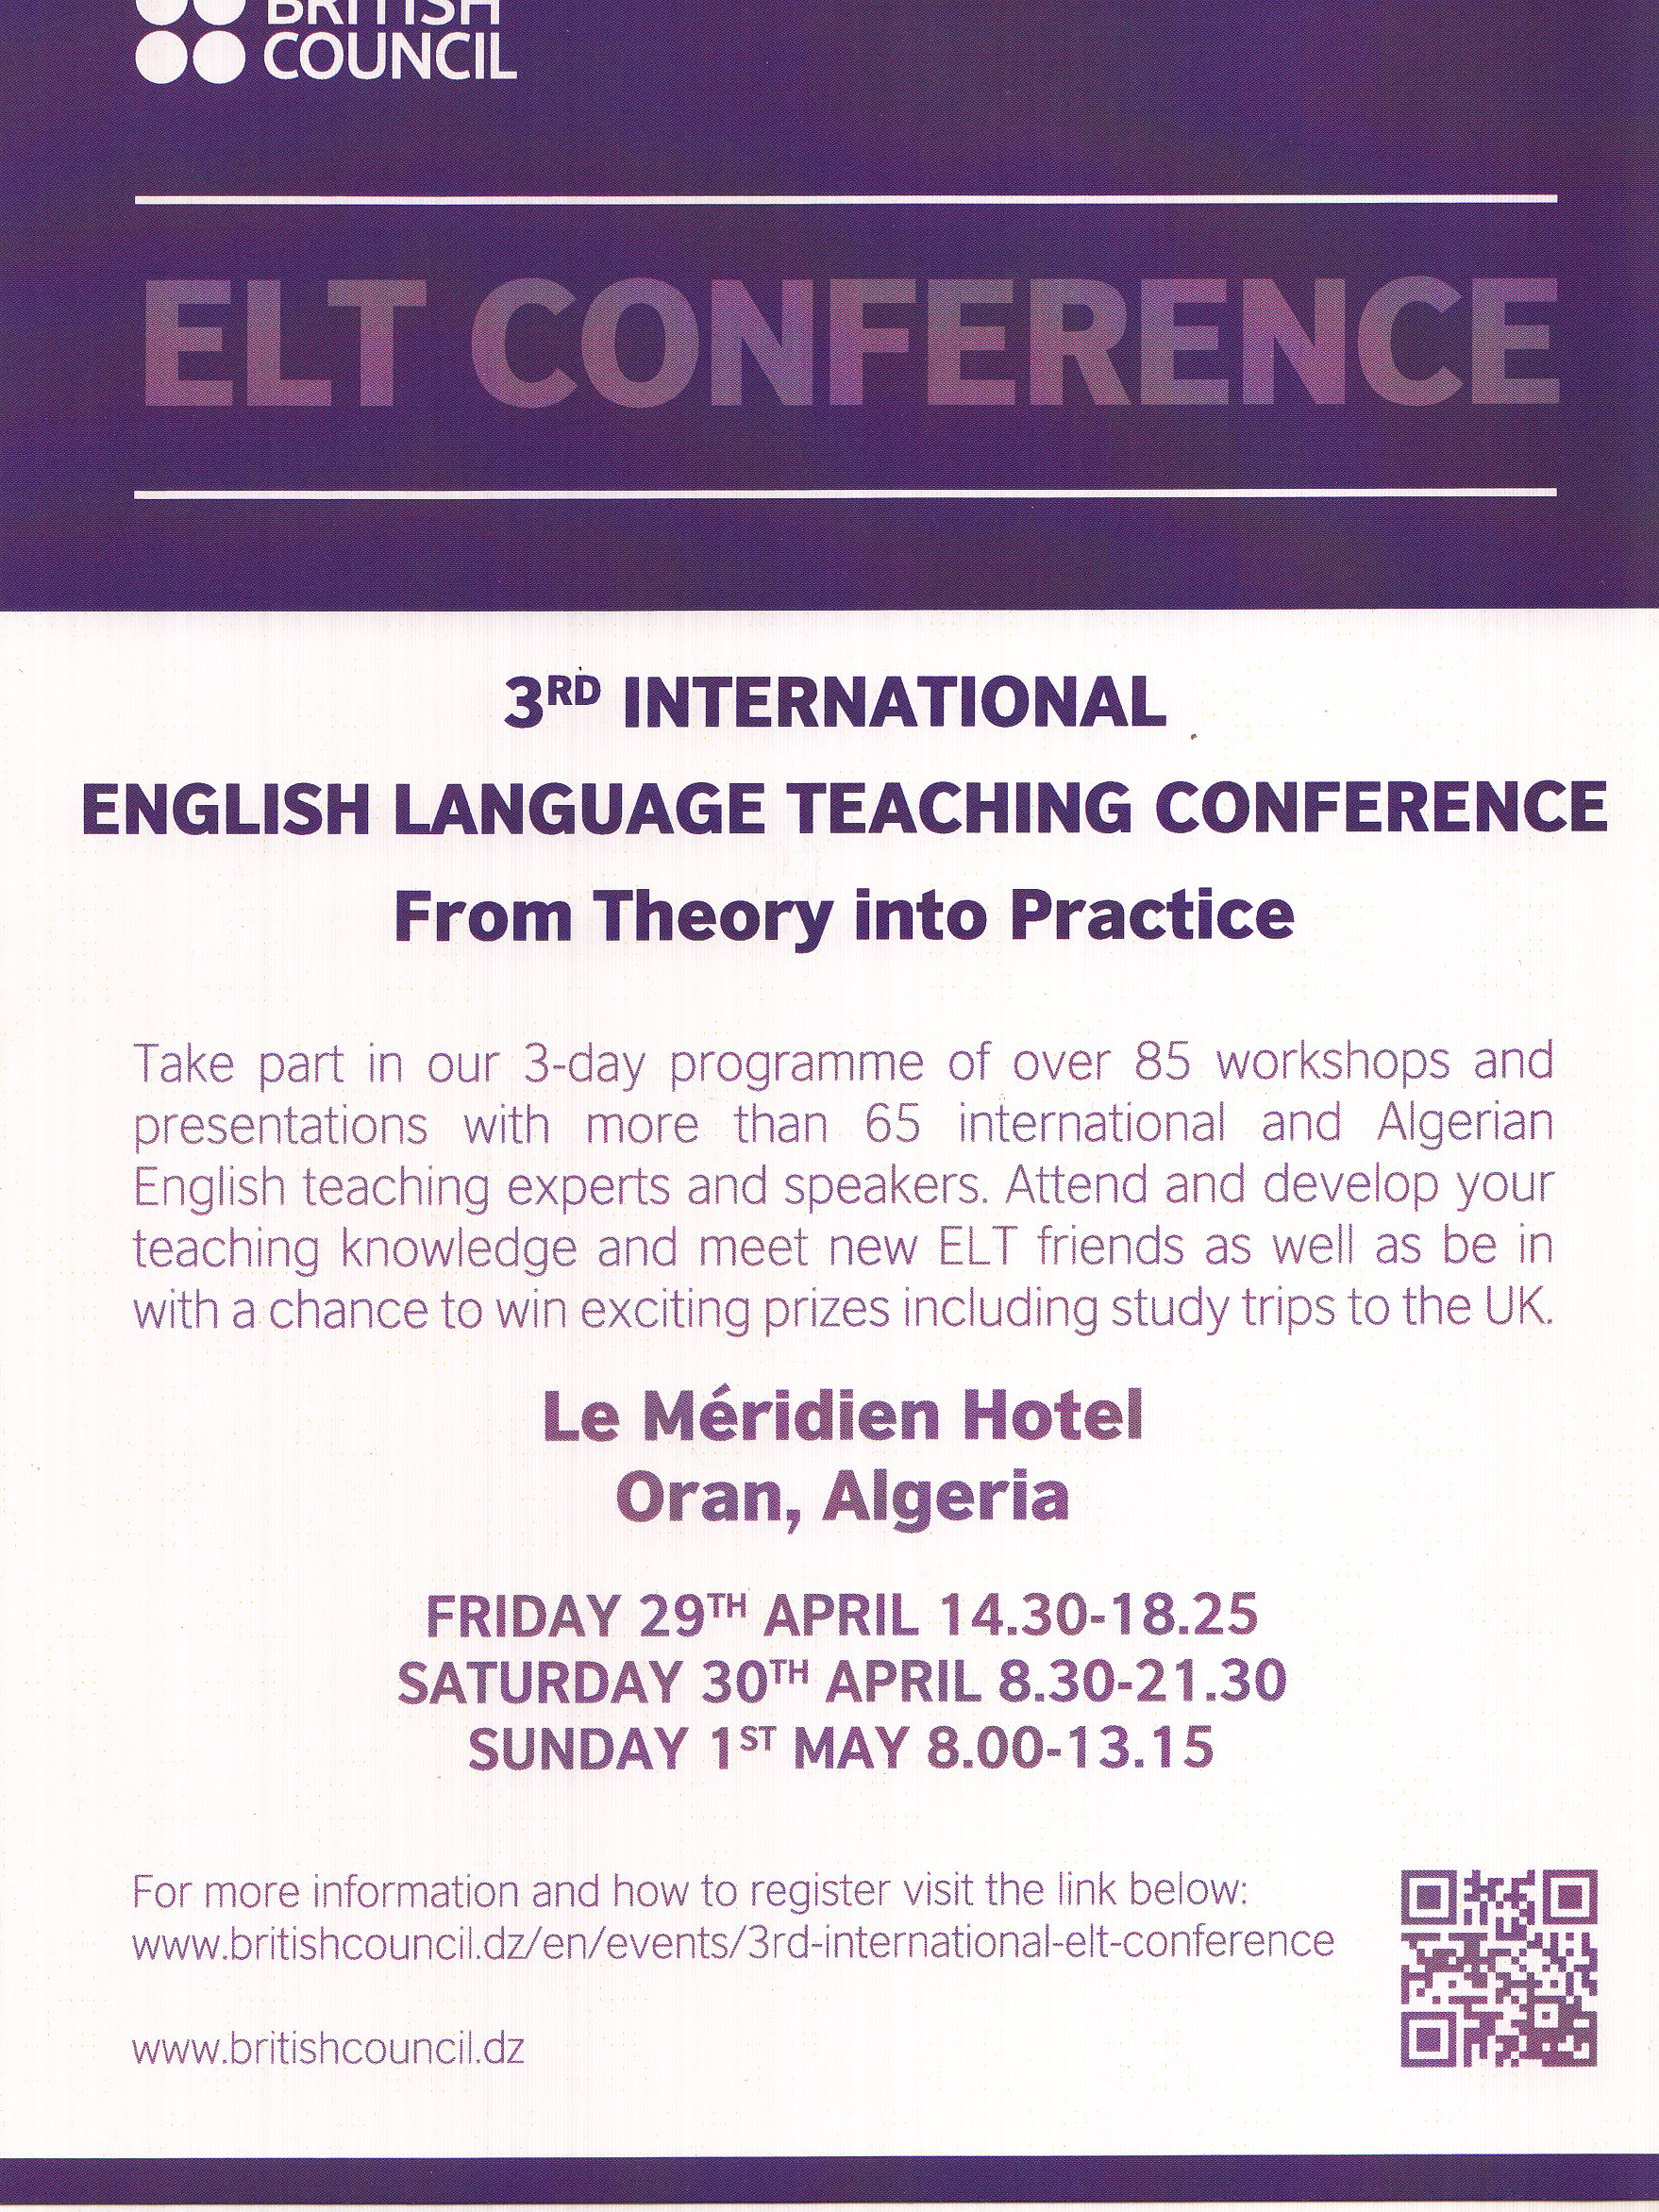 elt-conference